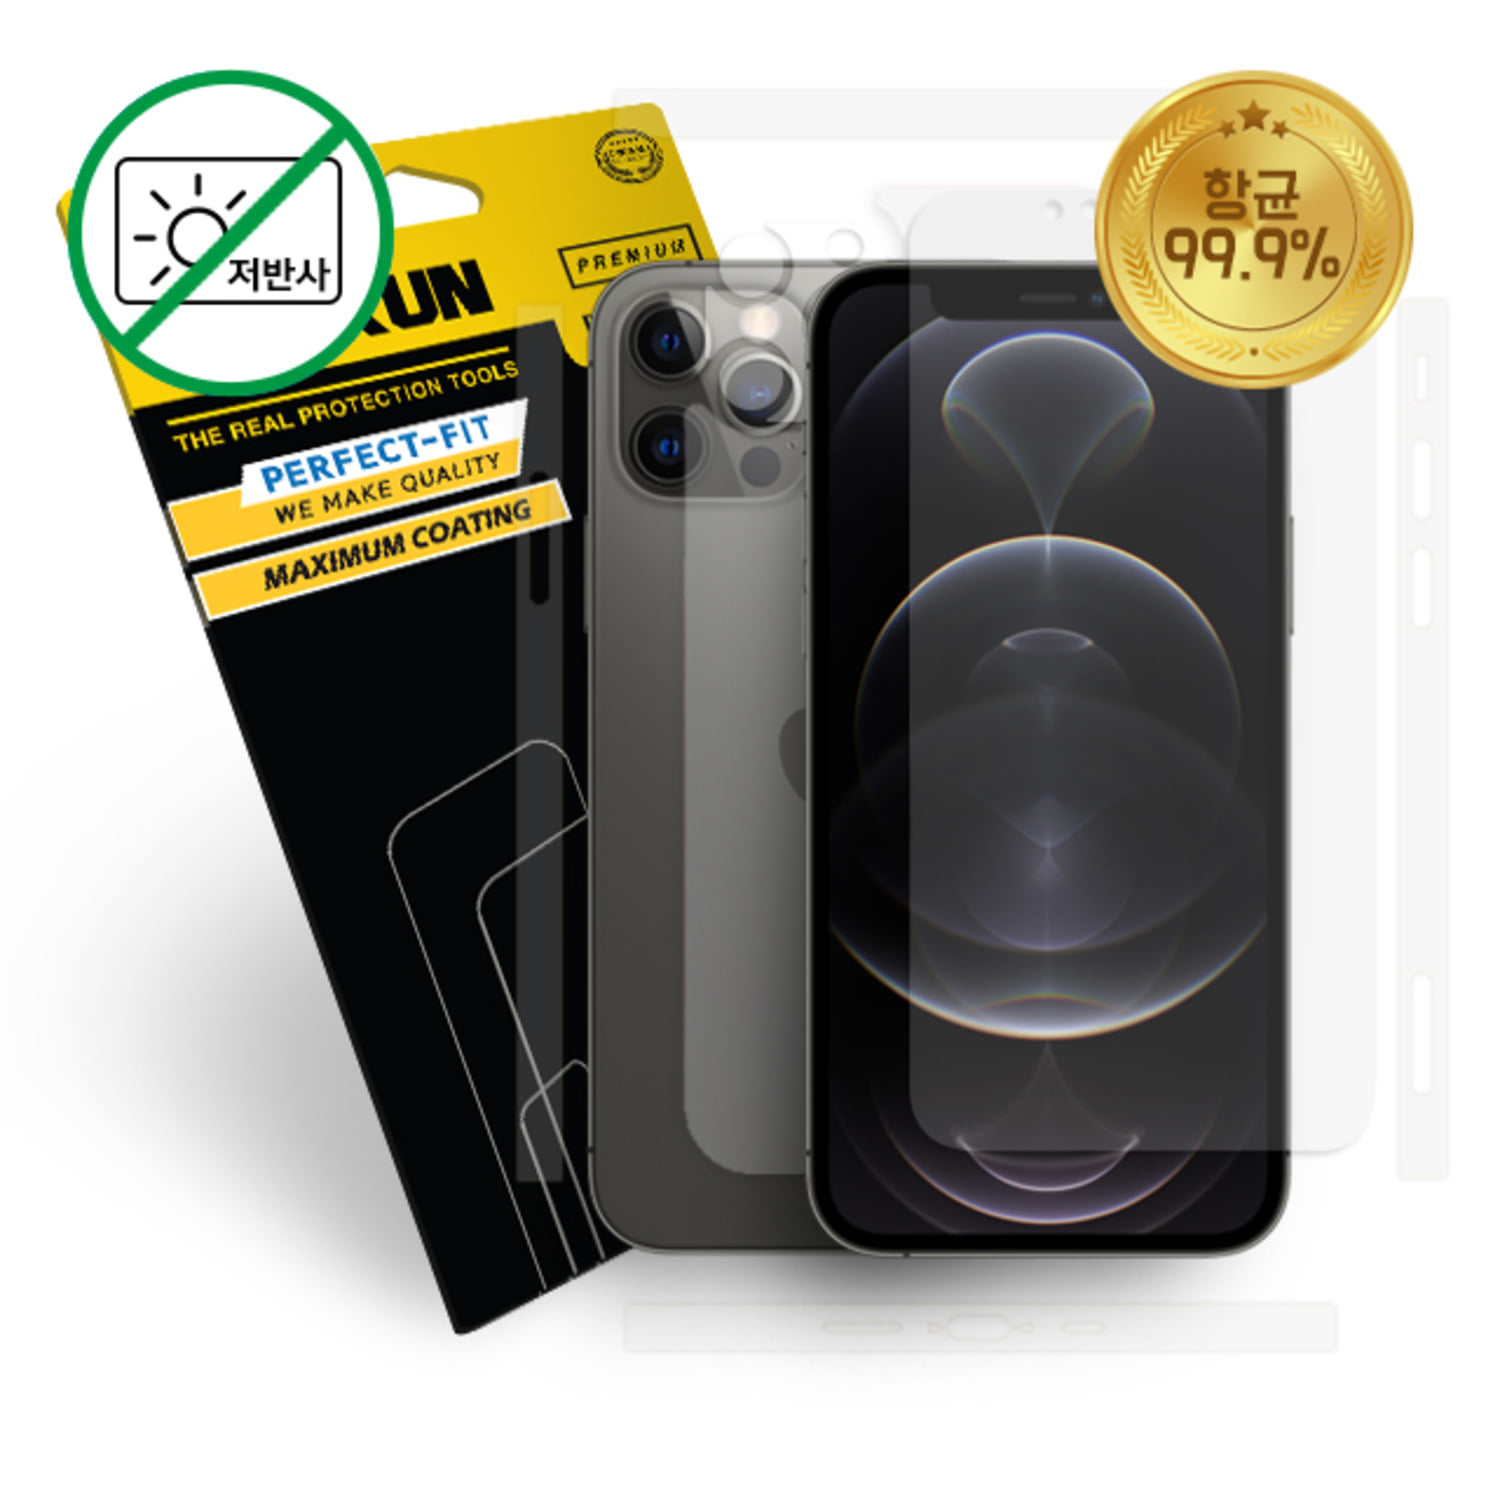 가우런 아이폰 12프로 항균 저반사 액정1매 +카메라(렌즈+렌즈 커버)1SET+무광(측면+후면) 외부보호필름 1매 풀세트(P0000DPS)